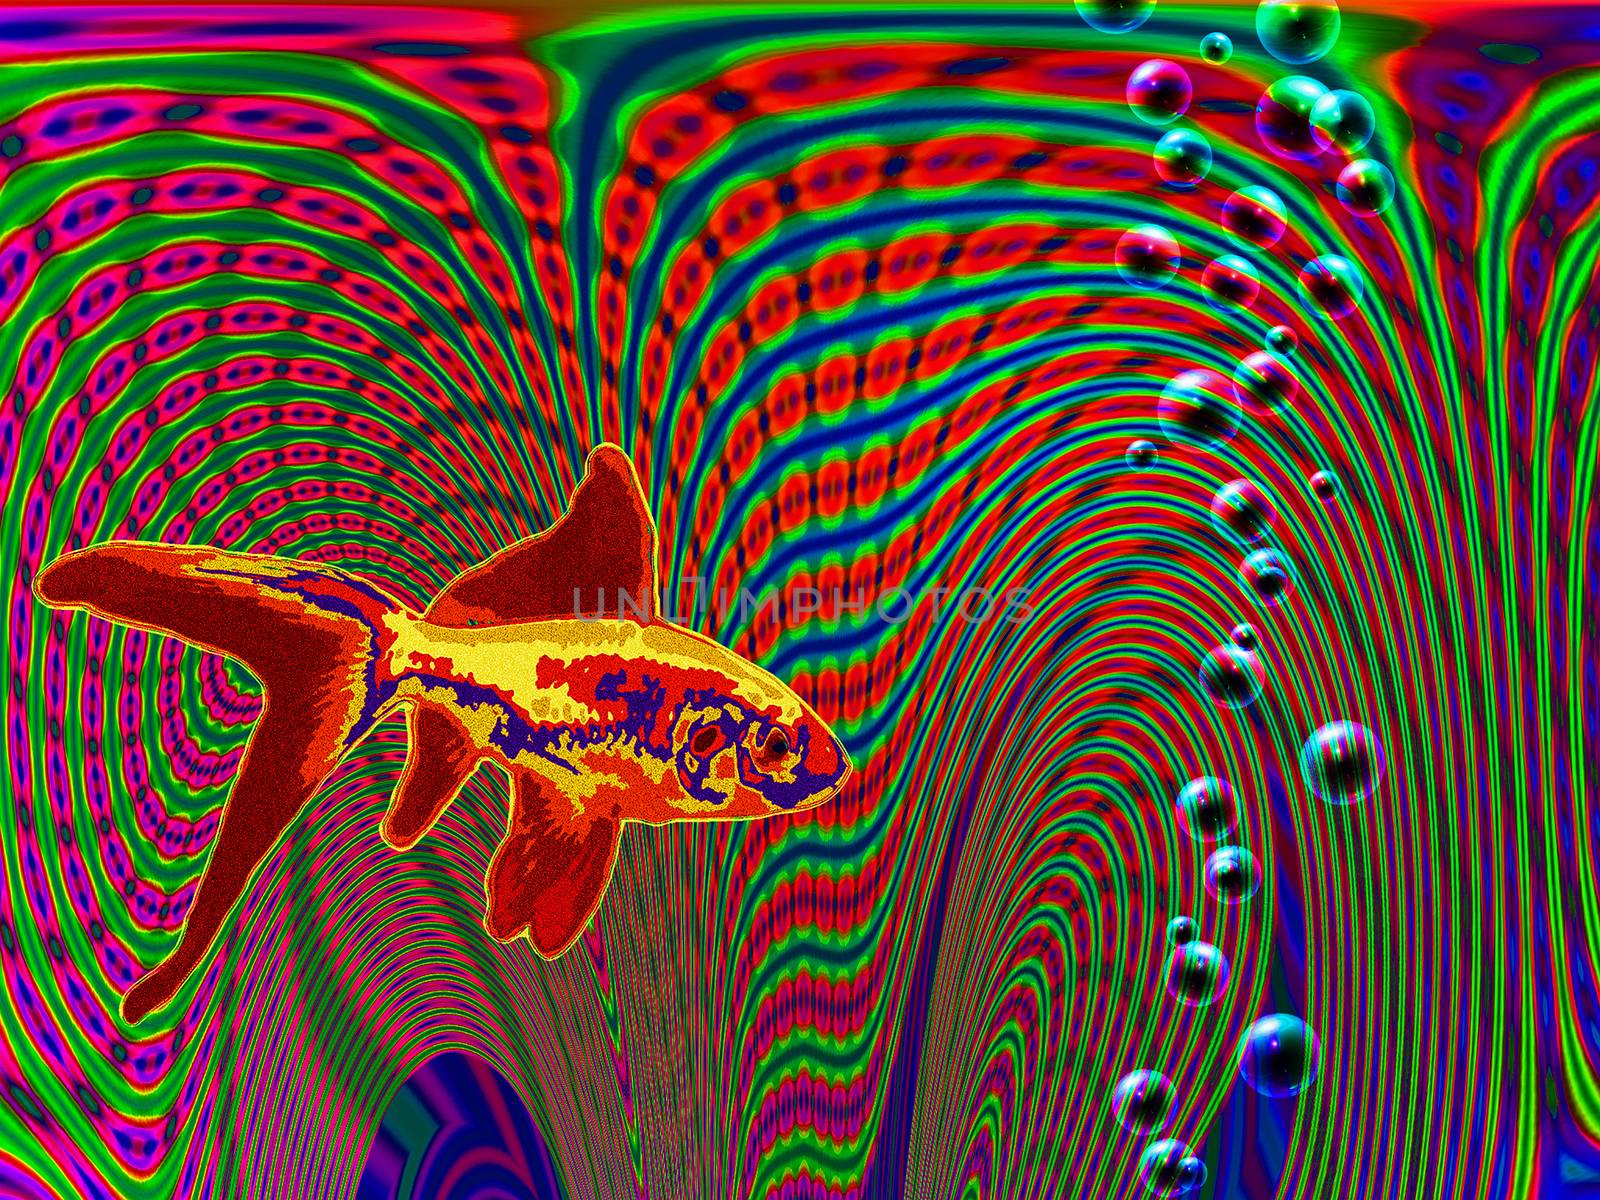 Hallucinogenic image. Golden fish. 3D rendering